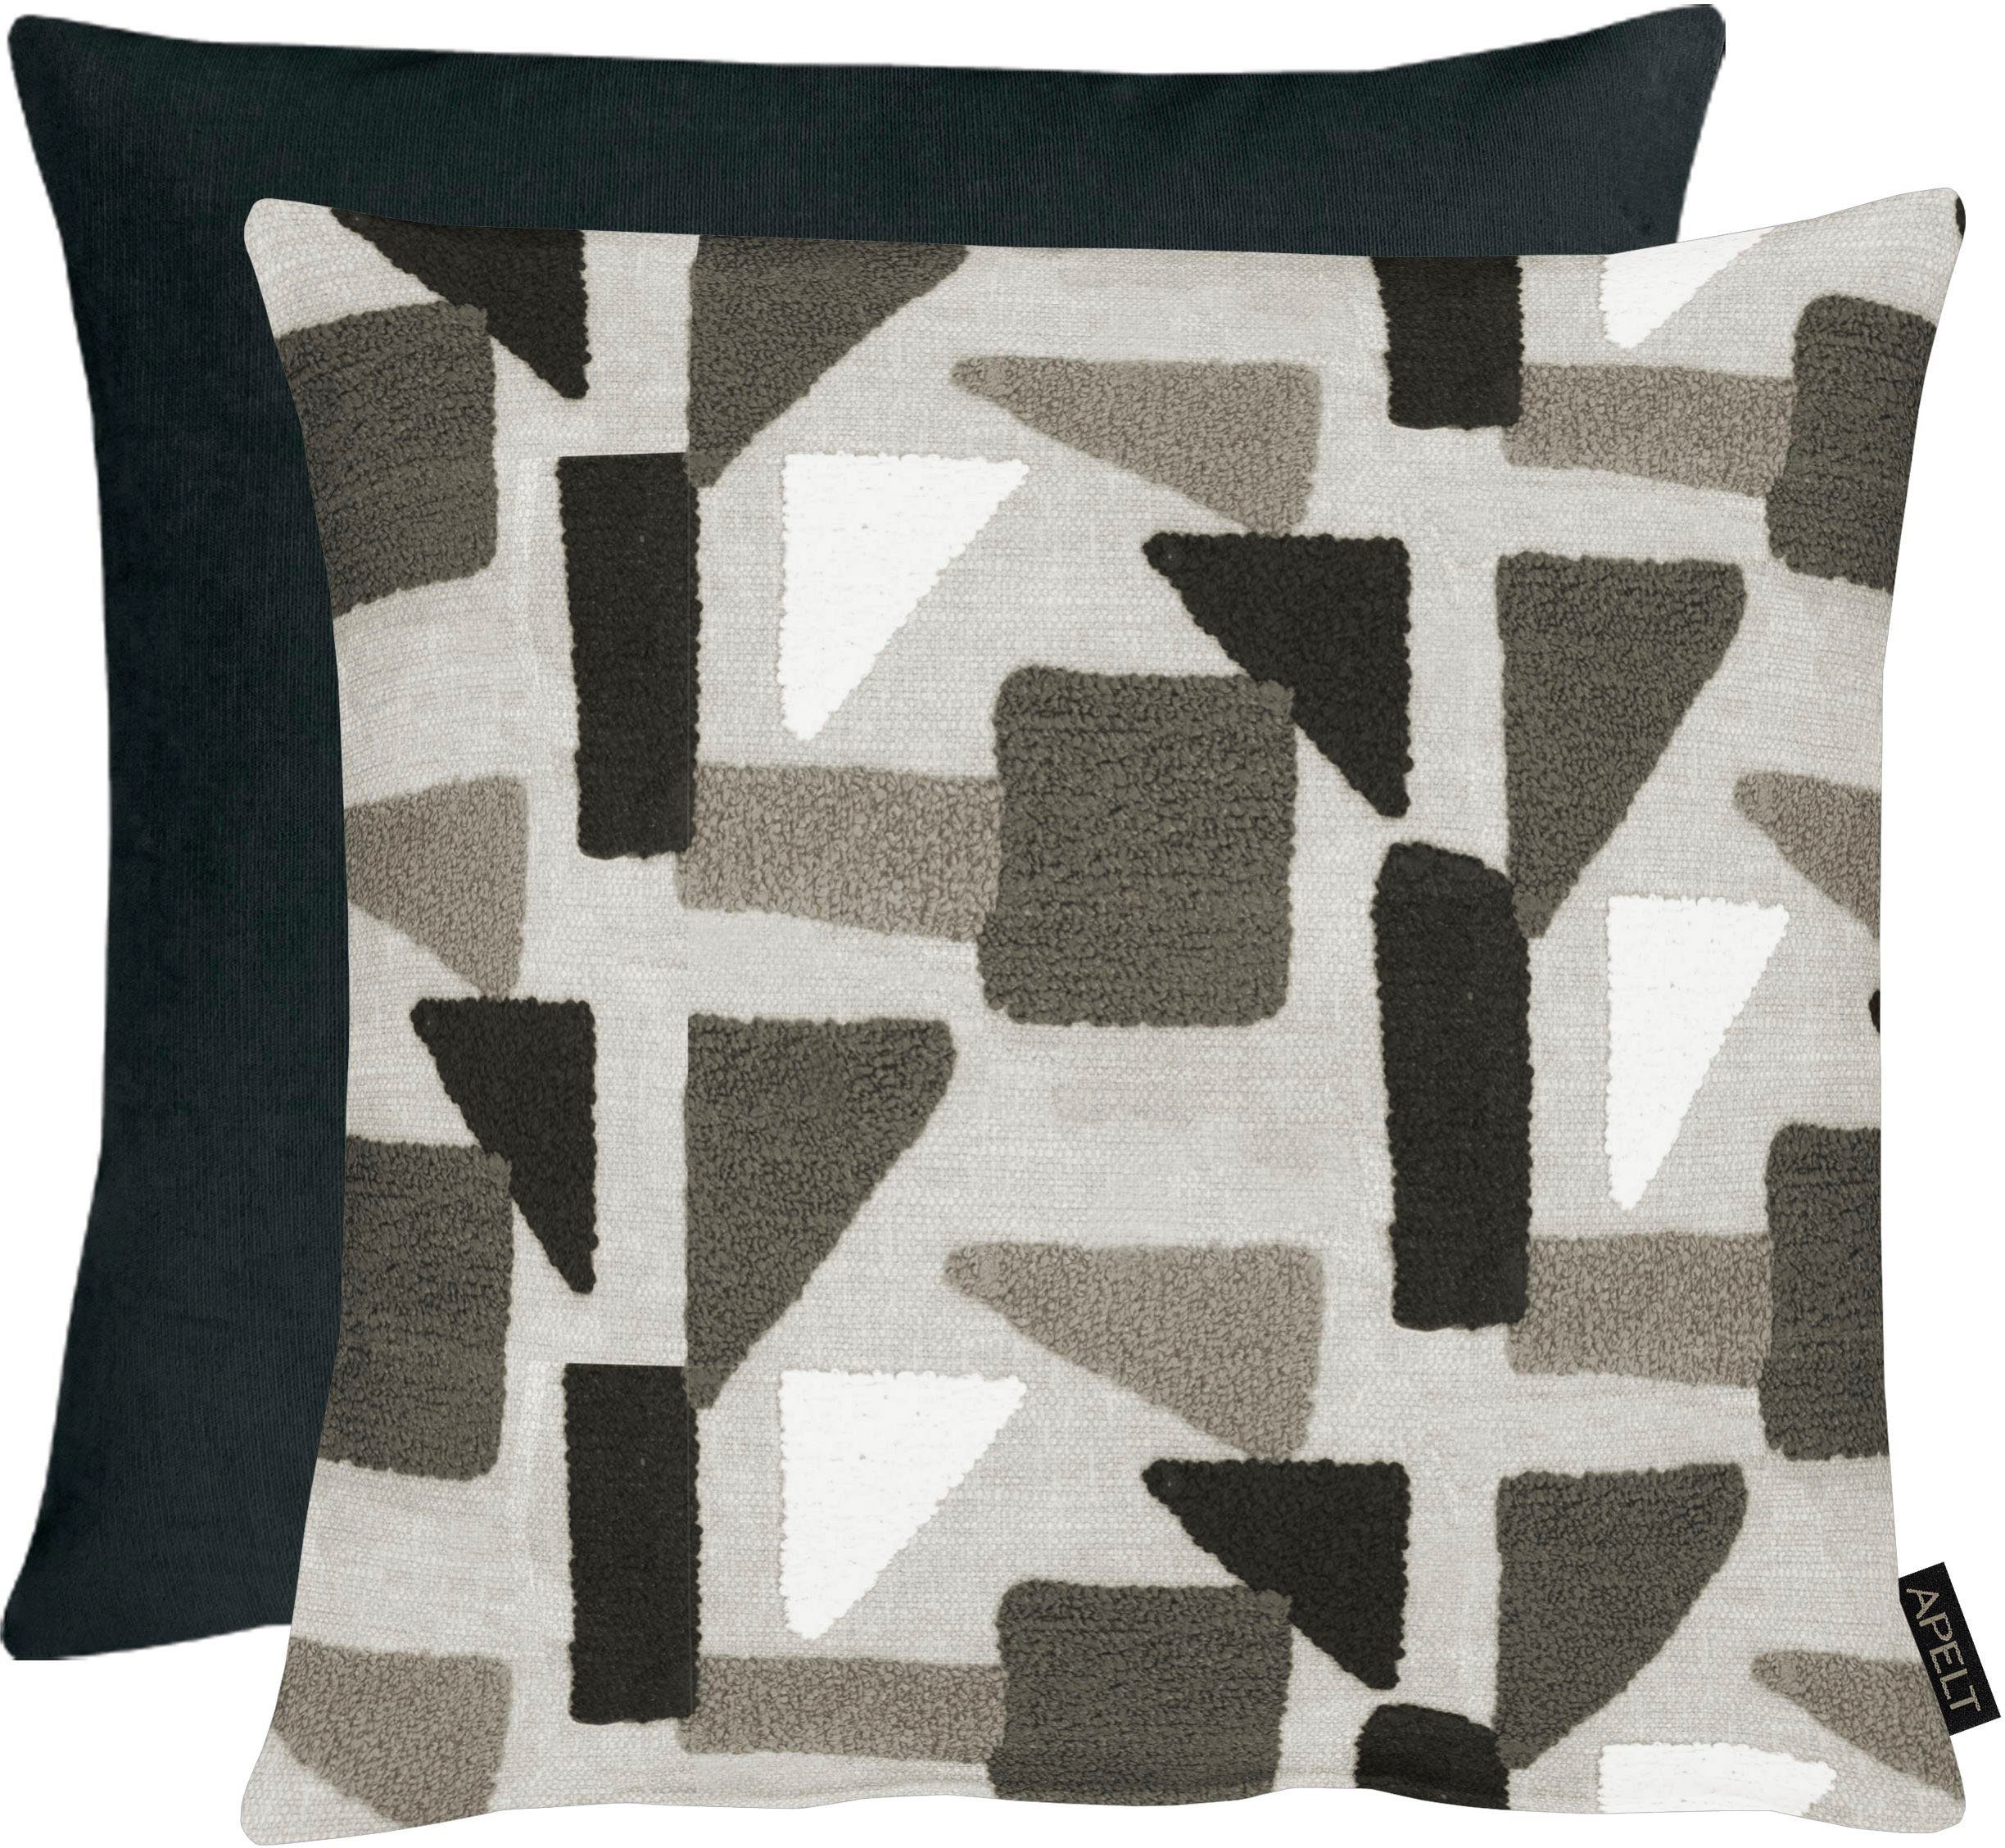 APELT Dekokissen Tablo, mit geometrischen Formen, Wendekissenhülle ohne Füllung, 1 Stück grau/schwarz